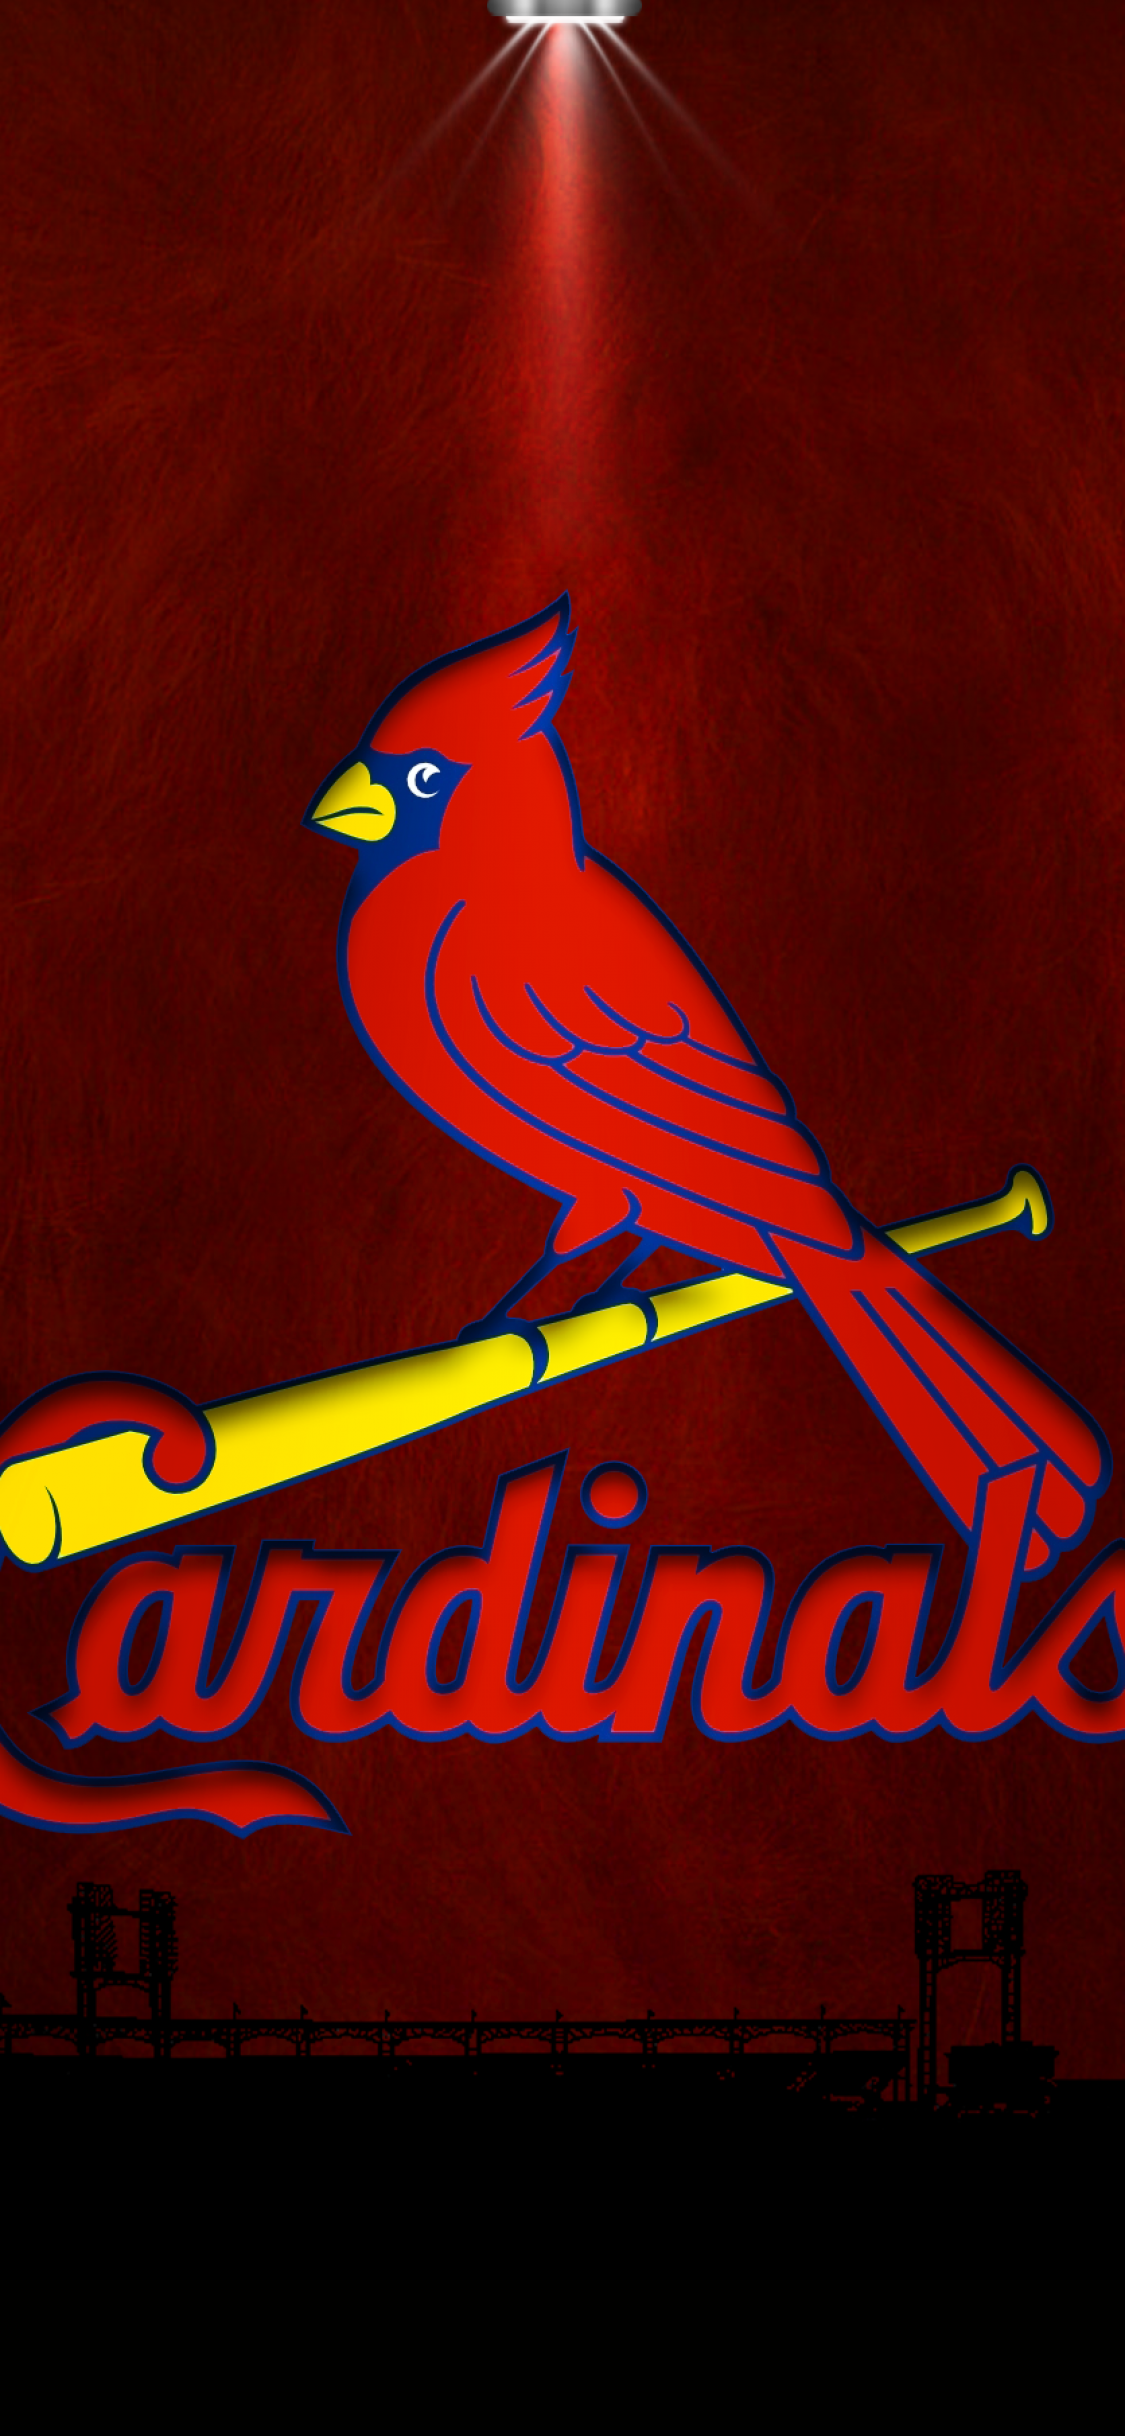 Iphone X Baseball Wallpaper - St Louis Cardinals Iphone 8 Wallpapers Hd - HD Wallpaper 